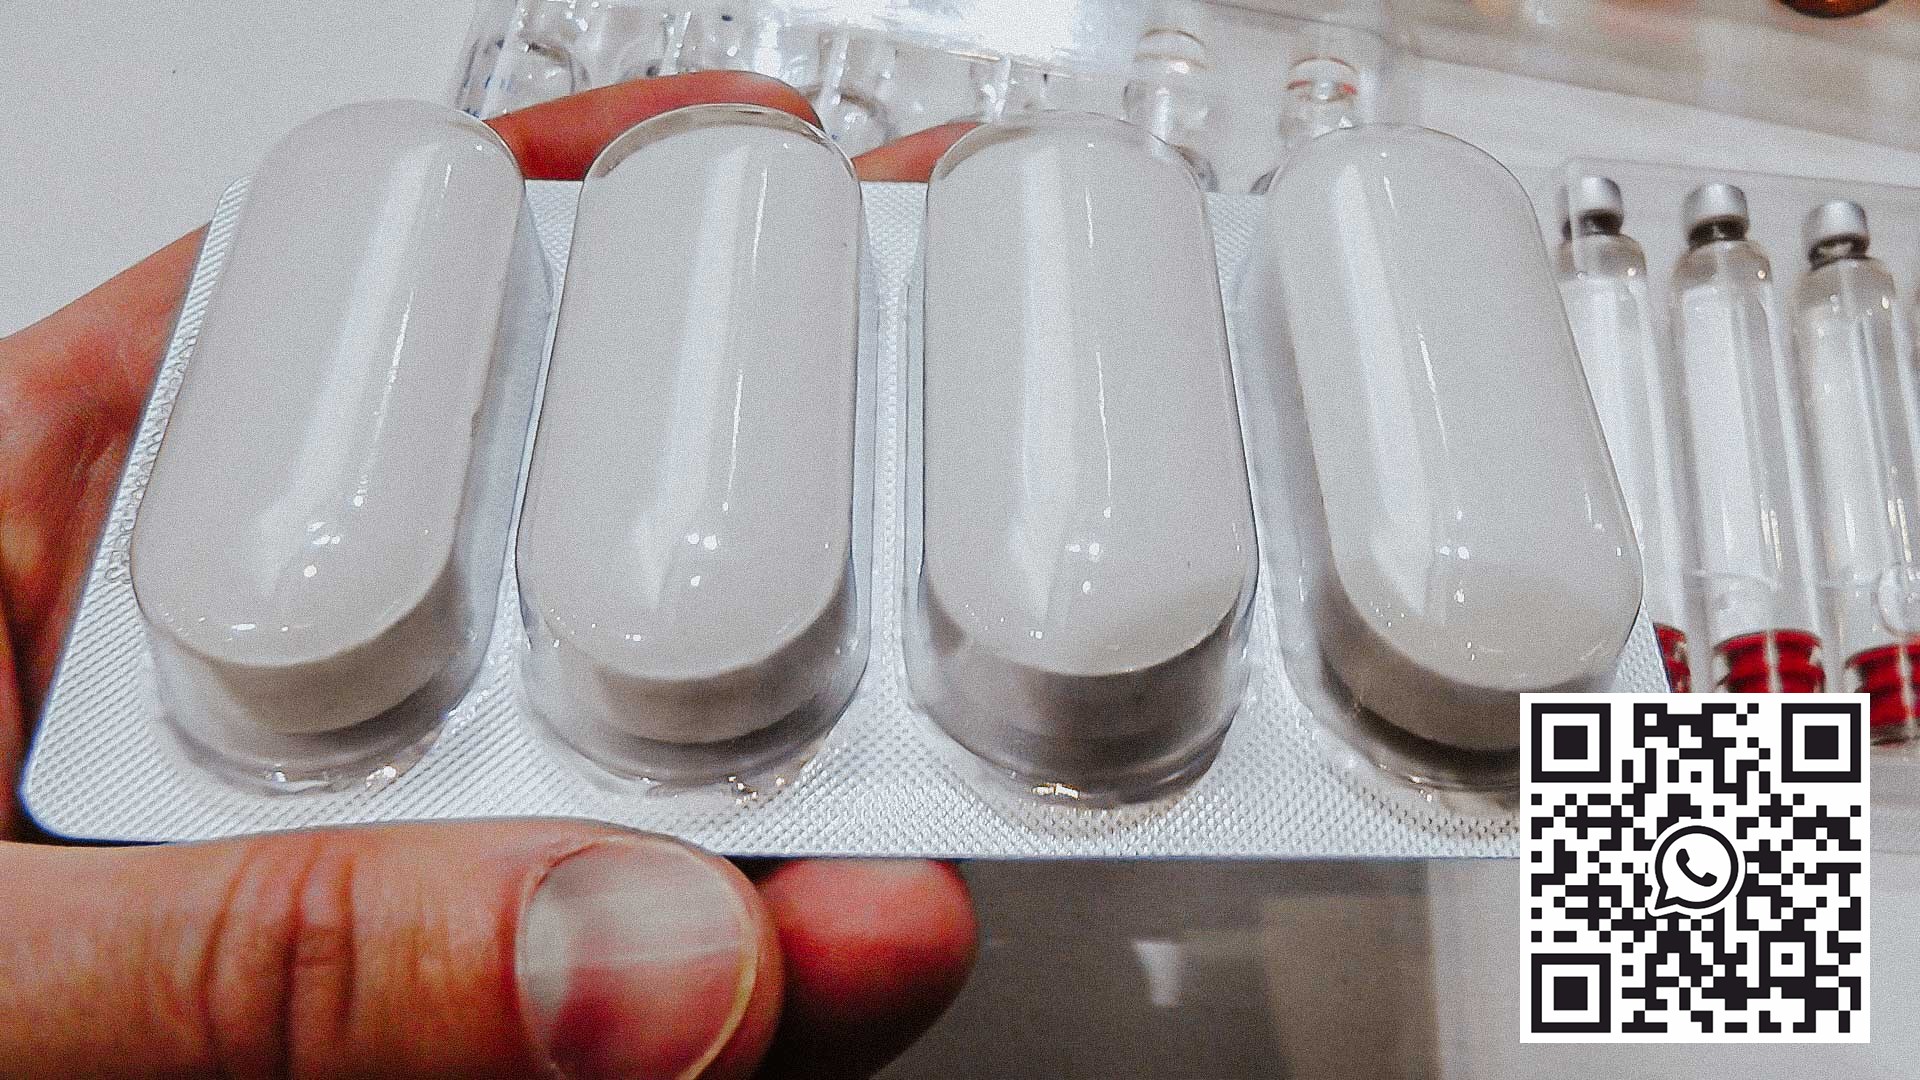 Balicí zařízení pro oválné tablety velké velikosti vyrobené z PVC a hliníku